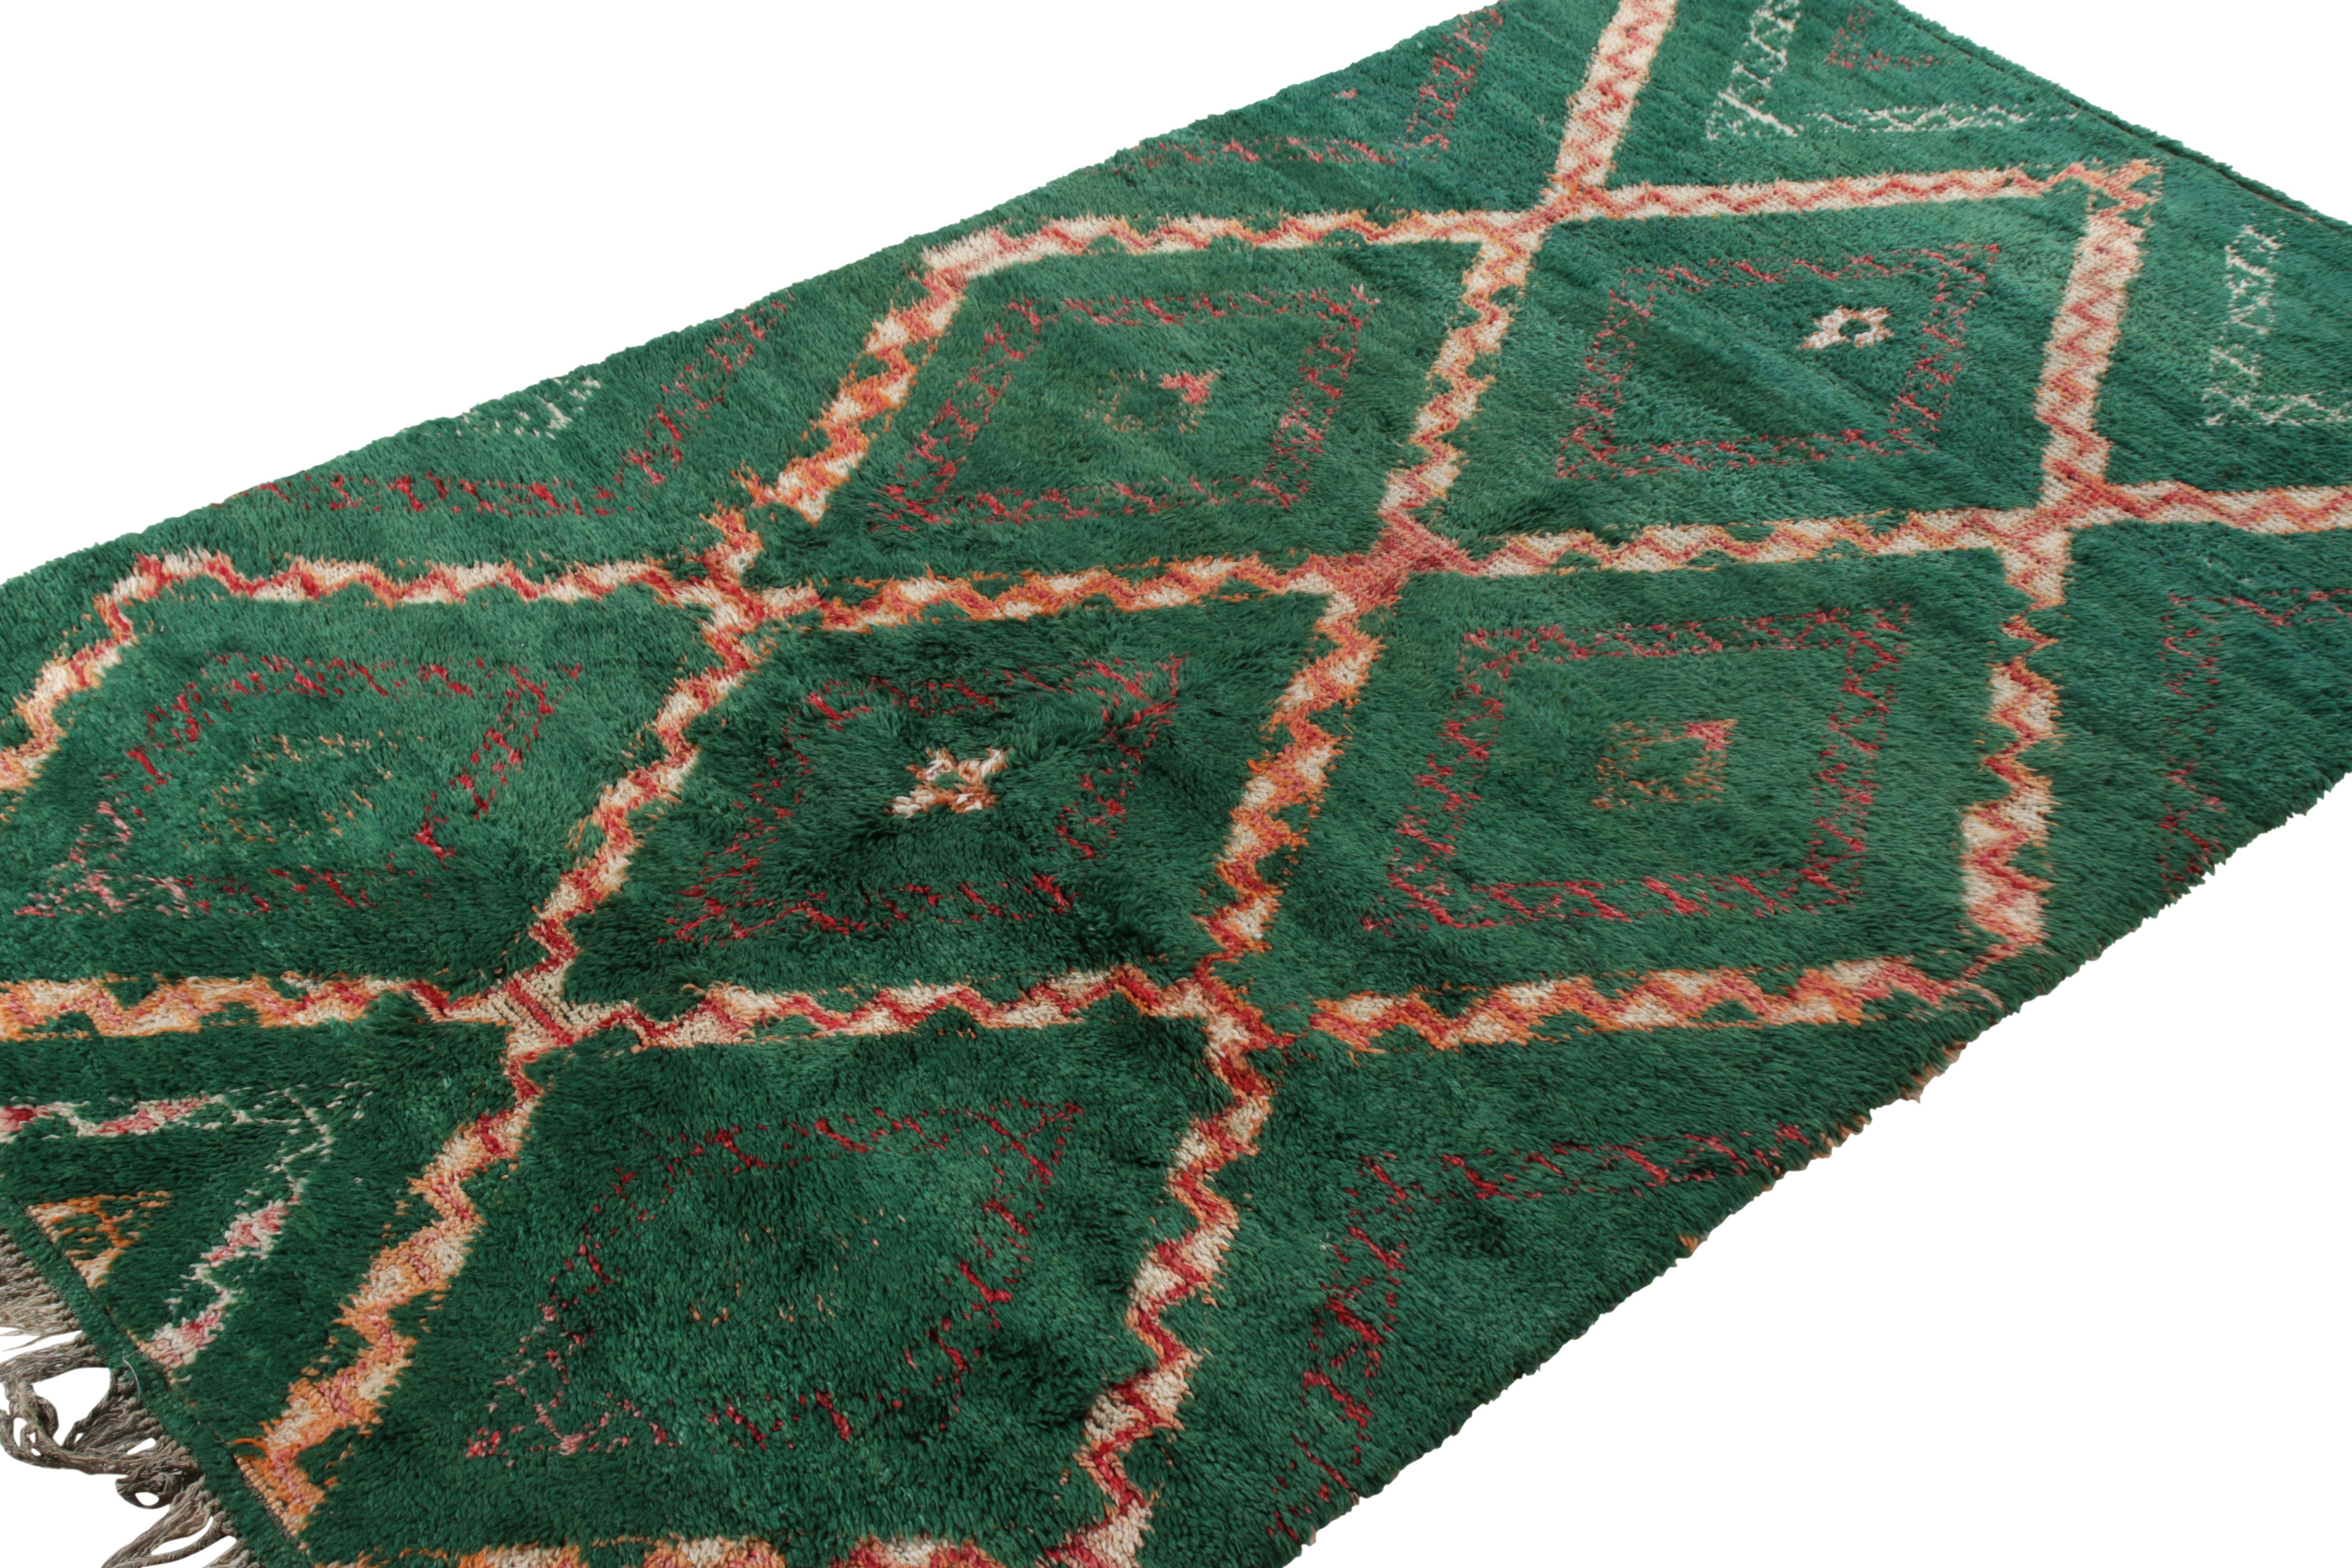 Tribal Vintage Berber Moroccan Rug in Green, Orange Geometric Pattern